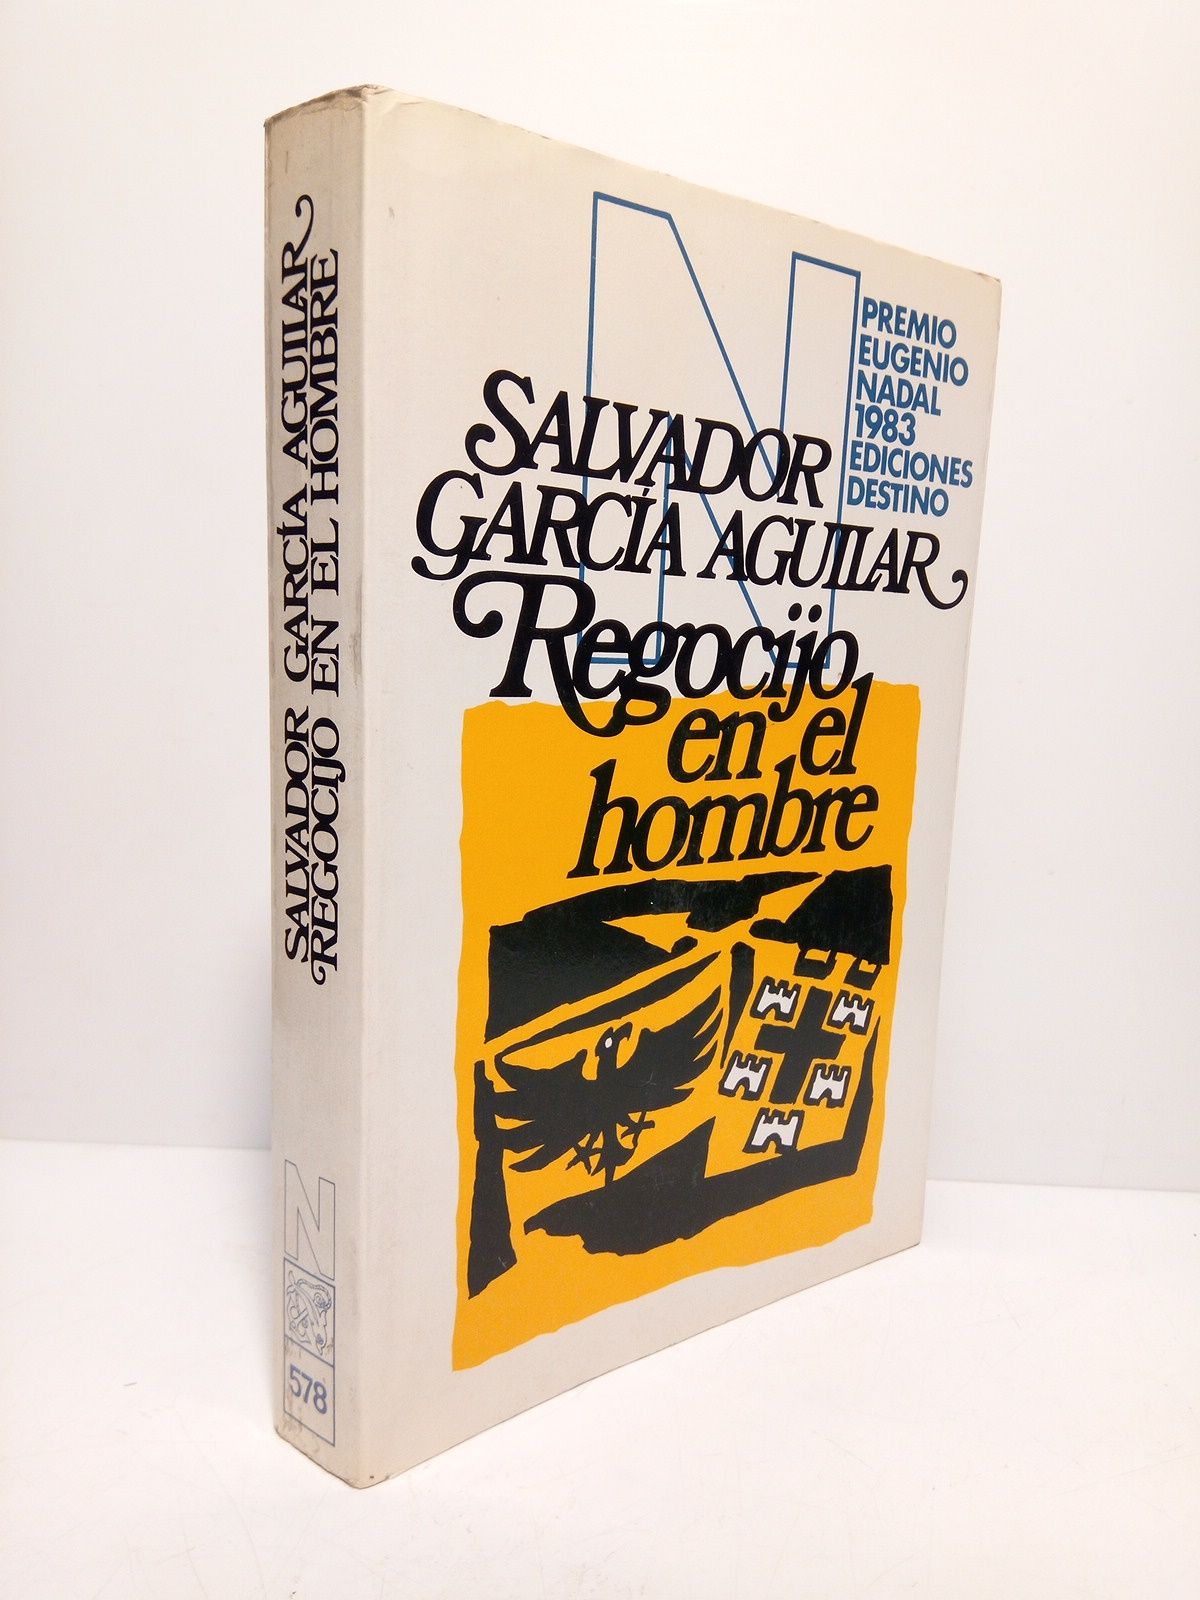 GARCIA AGUILAR, Salvador - Regocijo en el hombre (Premio Eugenio Nadal 1983)